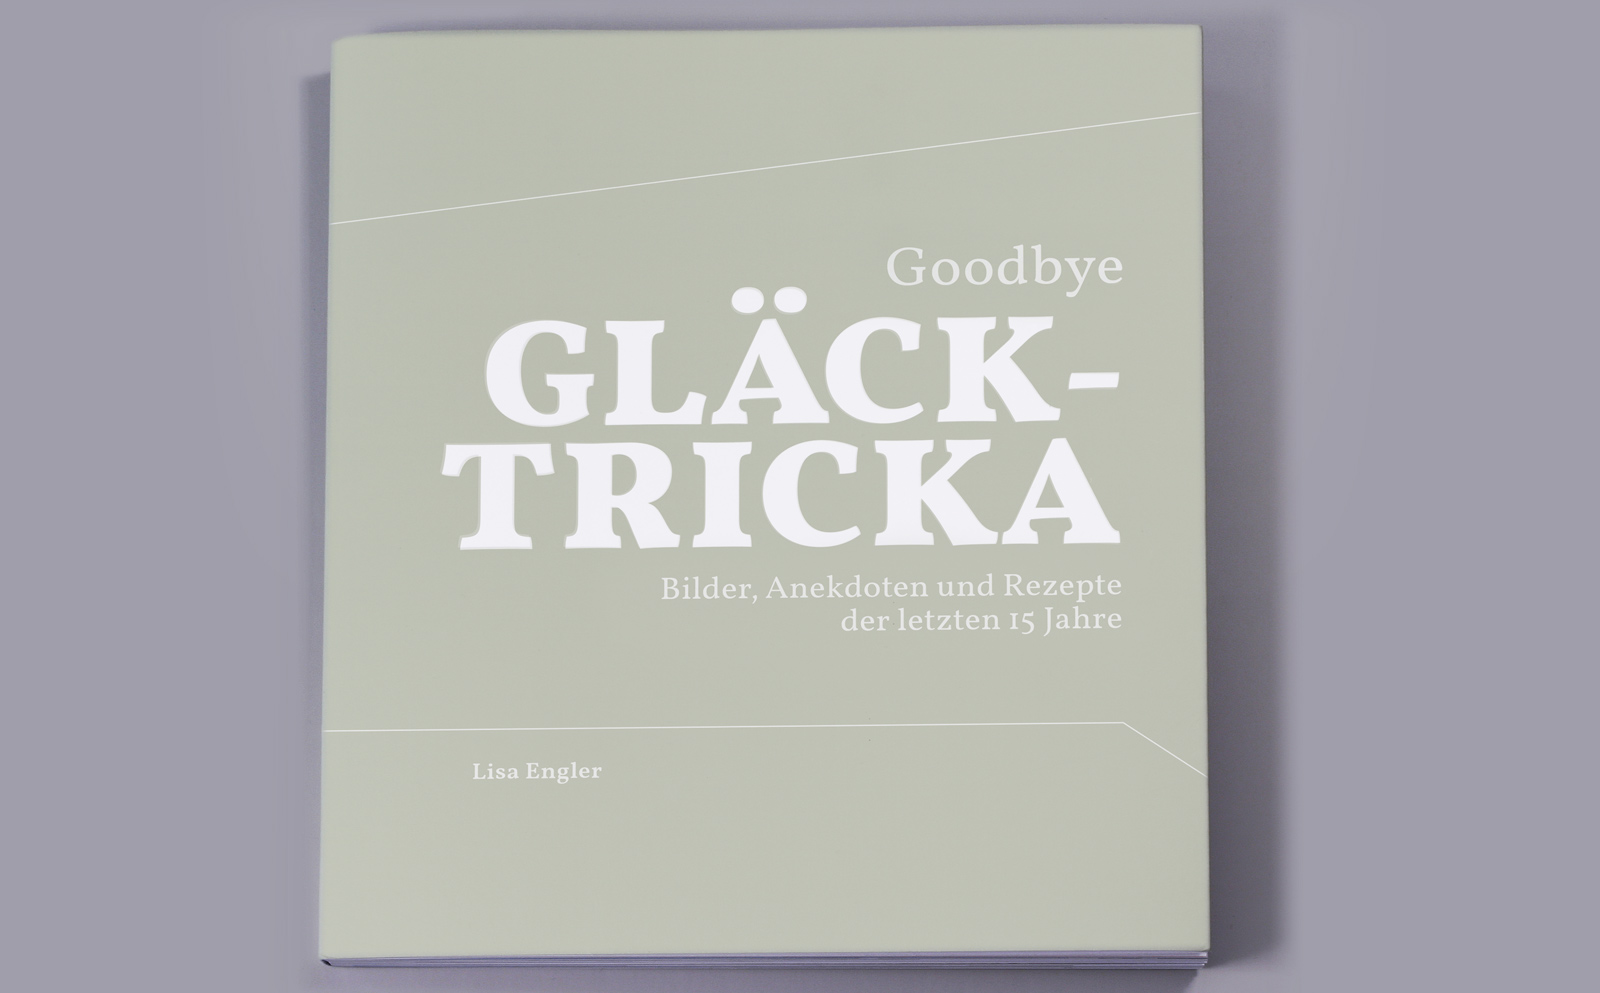 Gestaltung des Buches «Goodbye Gläcktricka» von Lisa Engler - Umschlag